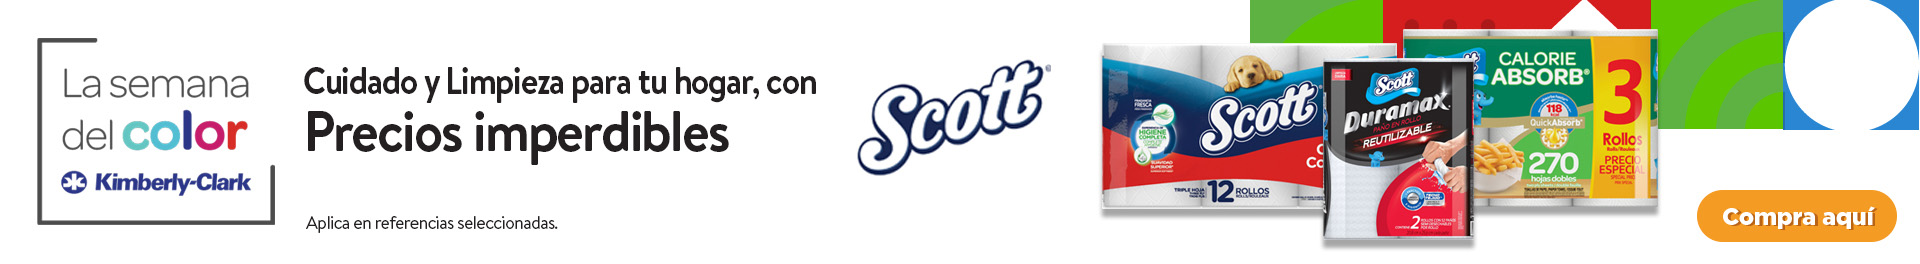 Scott